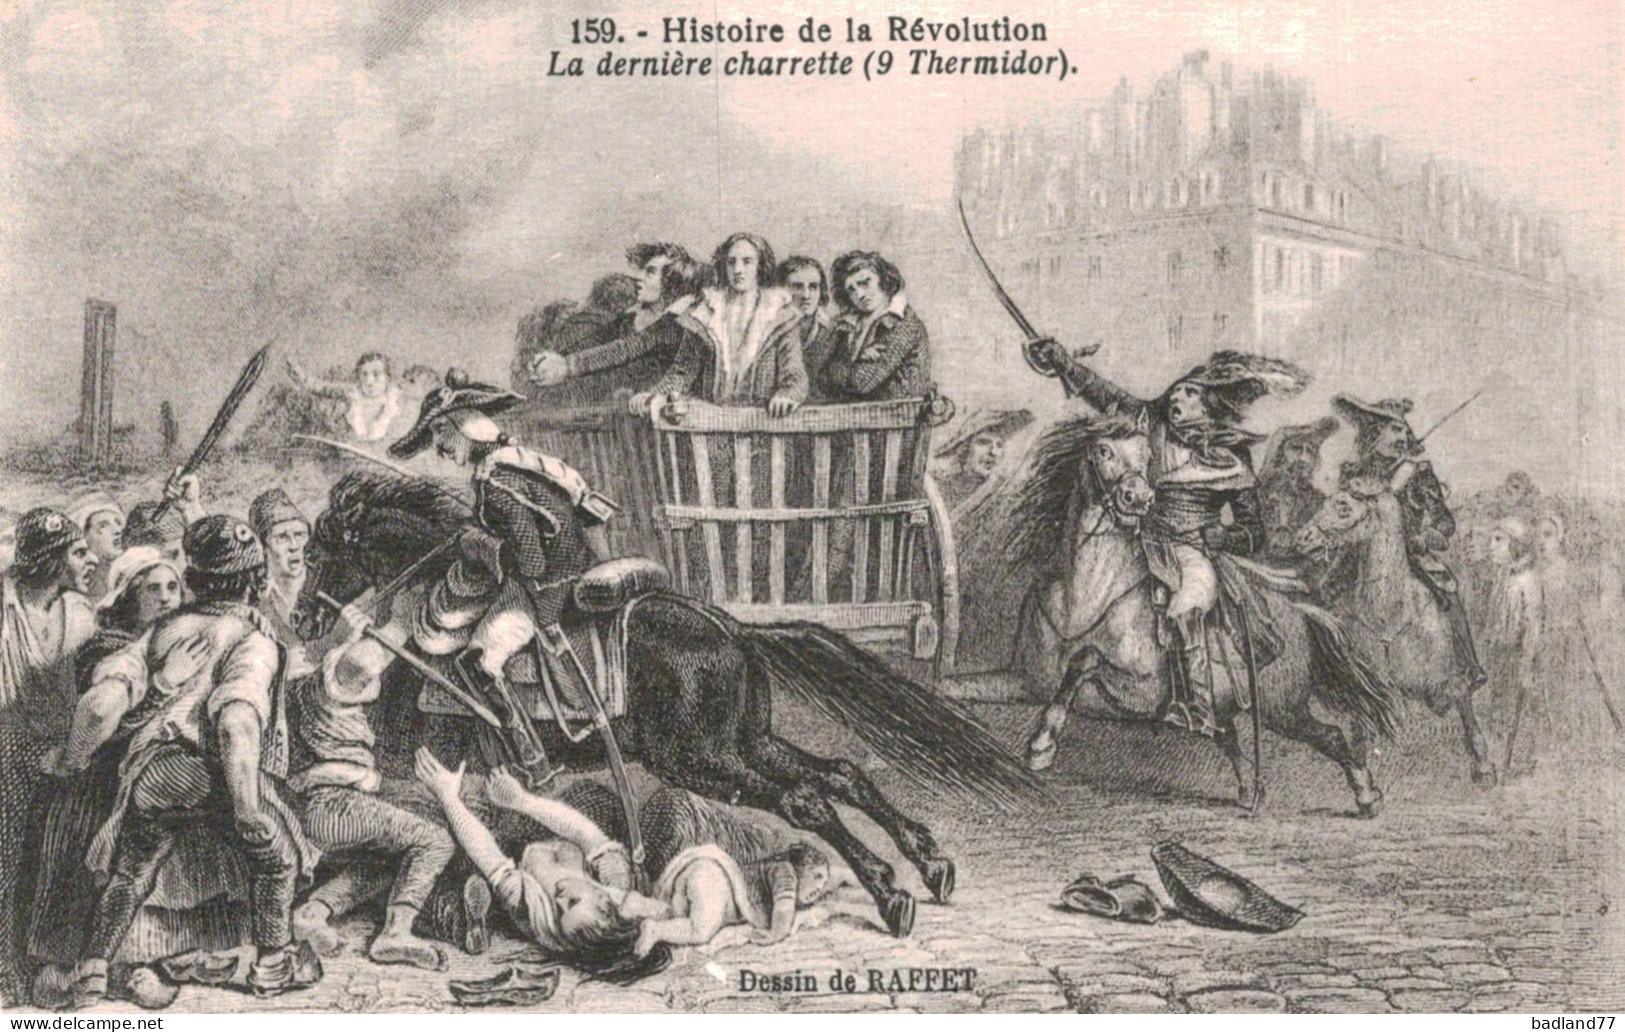 Lot 9 cartes postales - Histoire de la Révolution